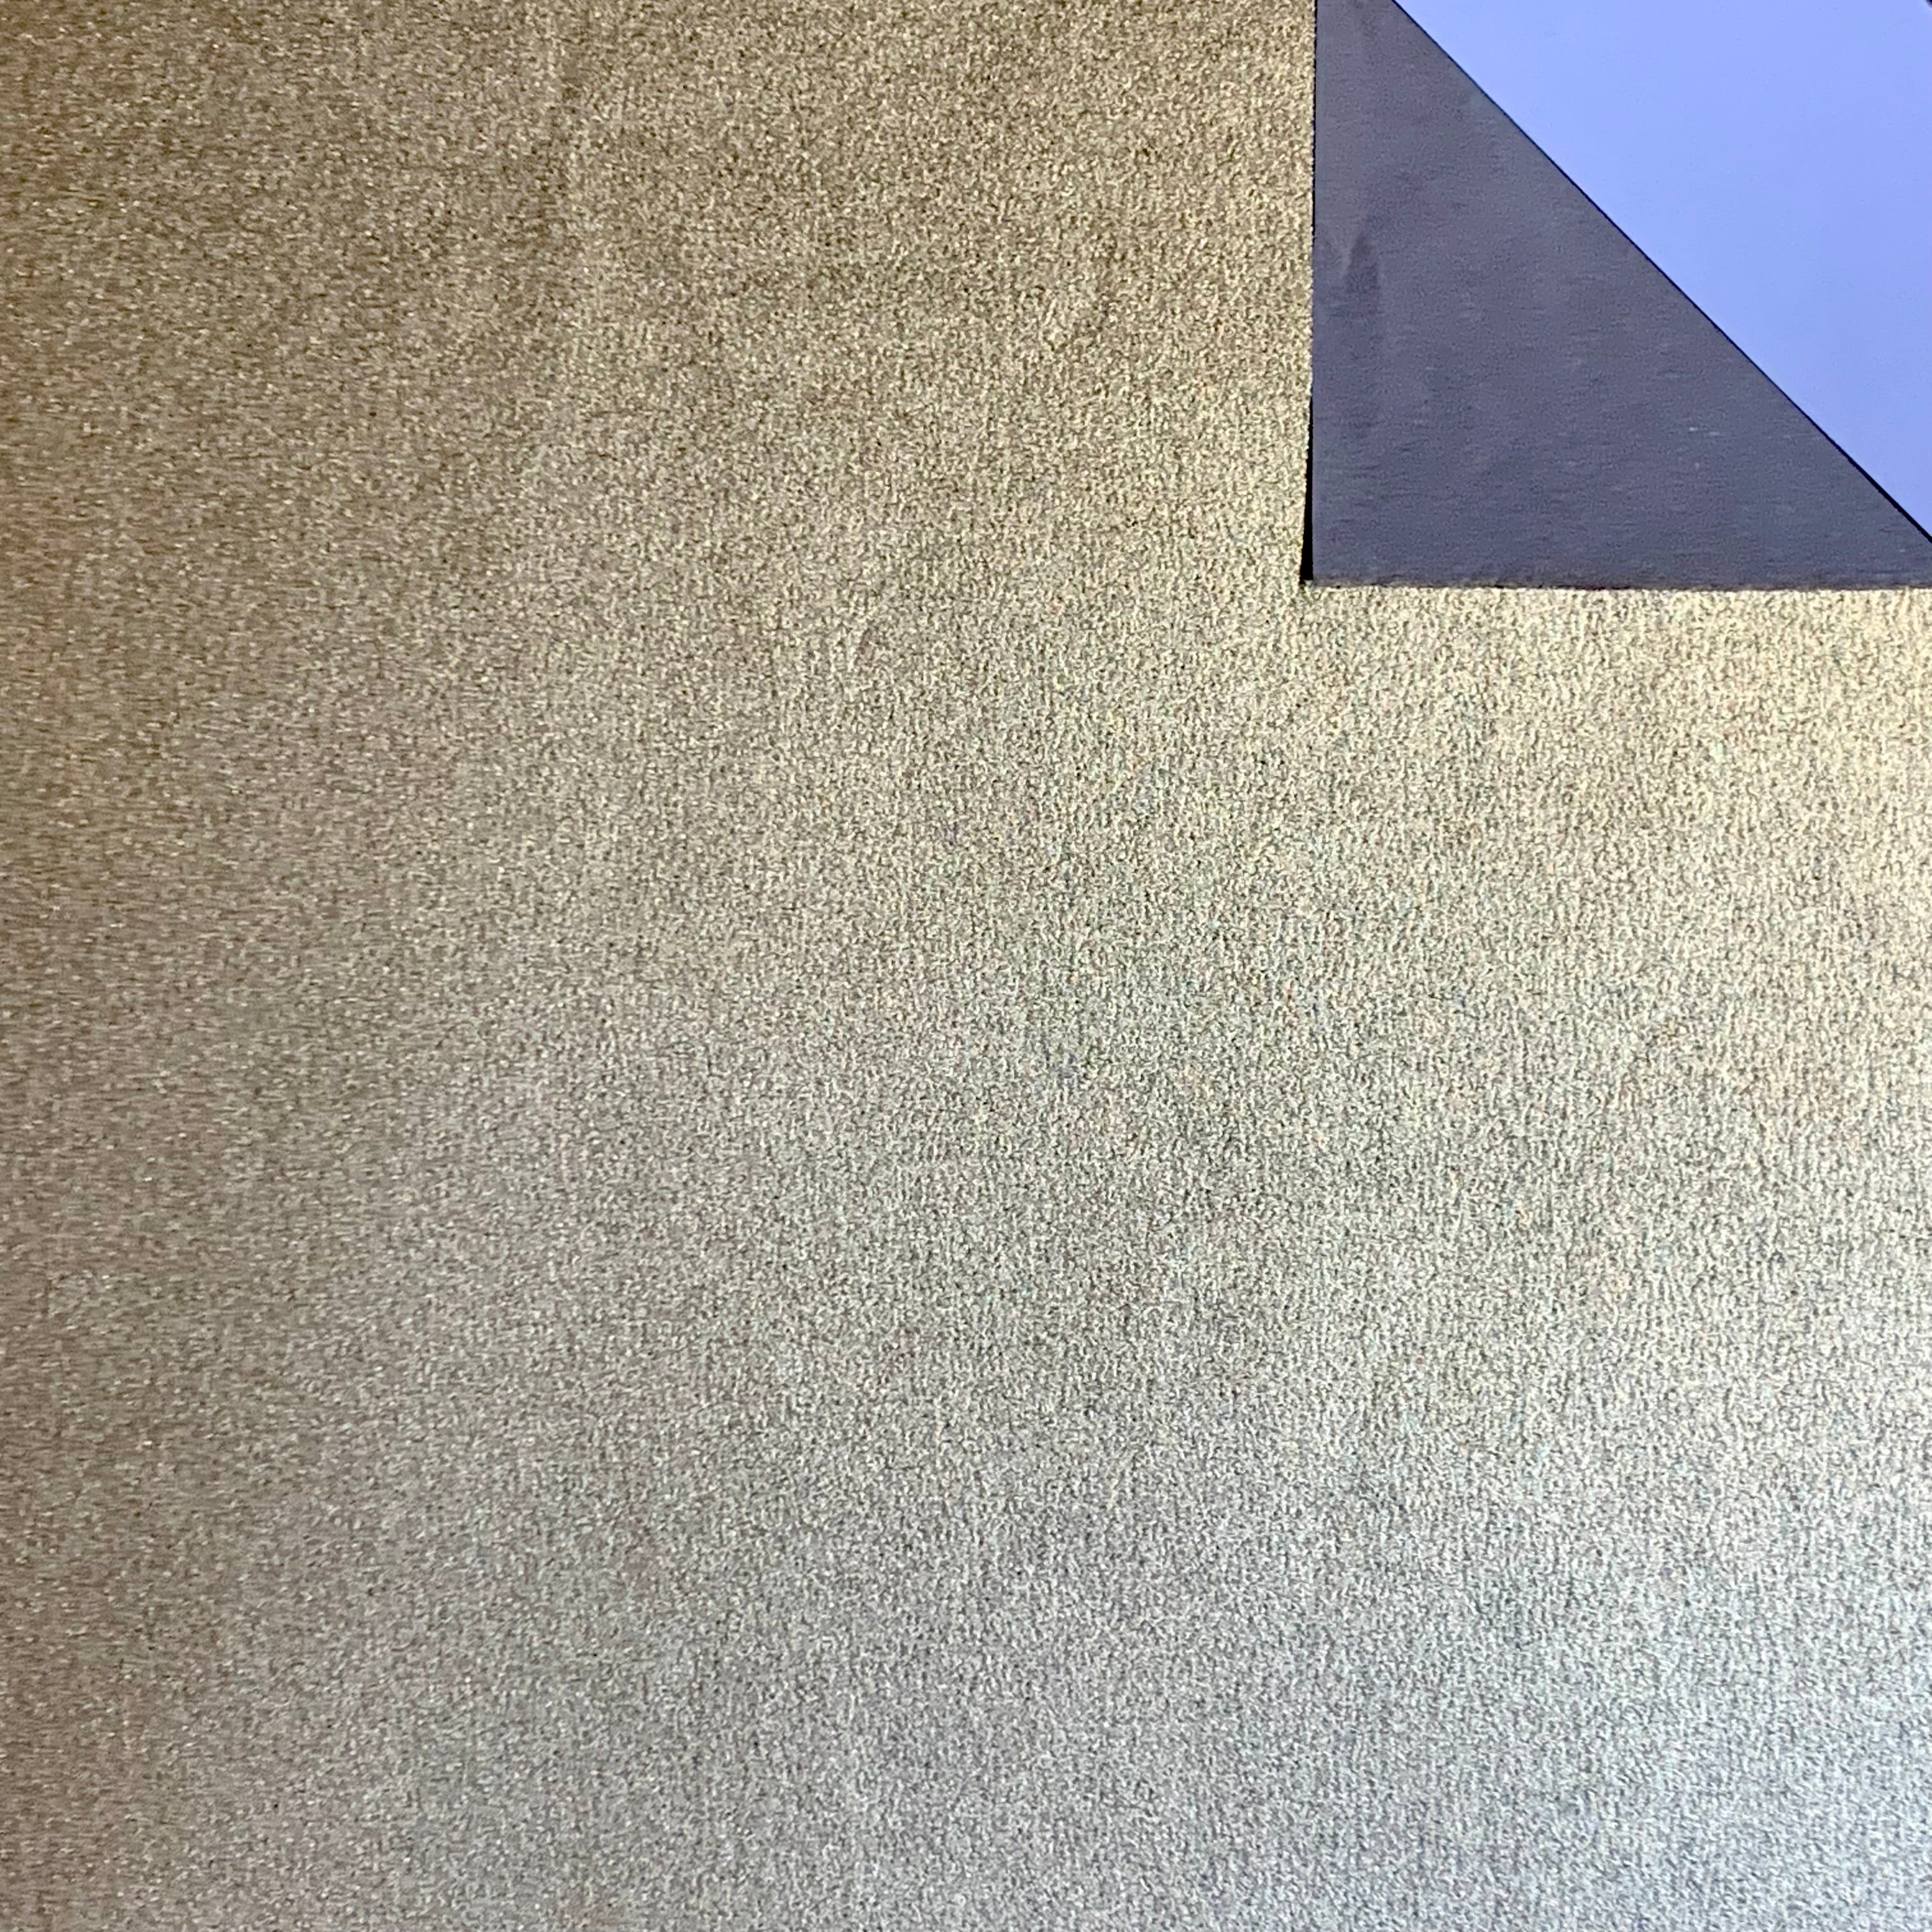 Paper Tree Tissue Foil 12"(30 cm) Square Single Sheet